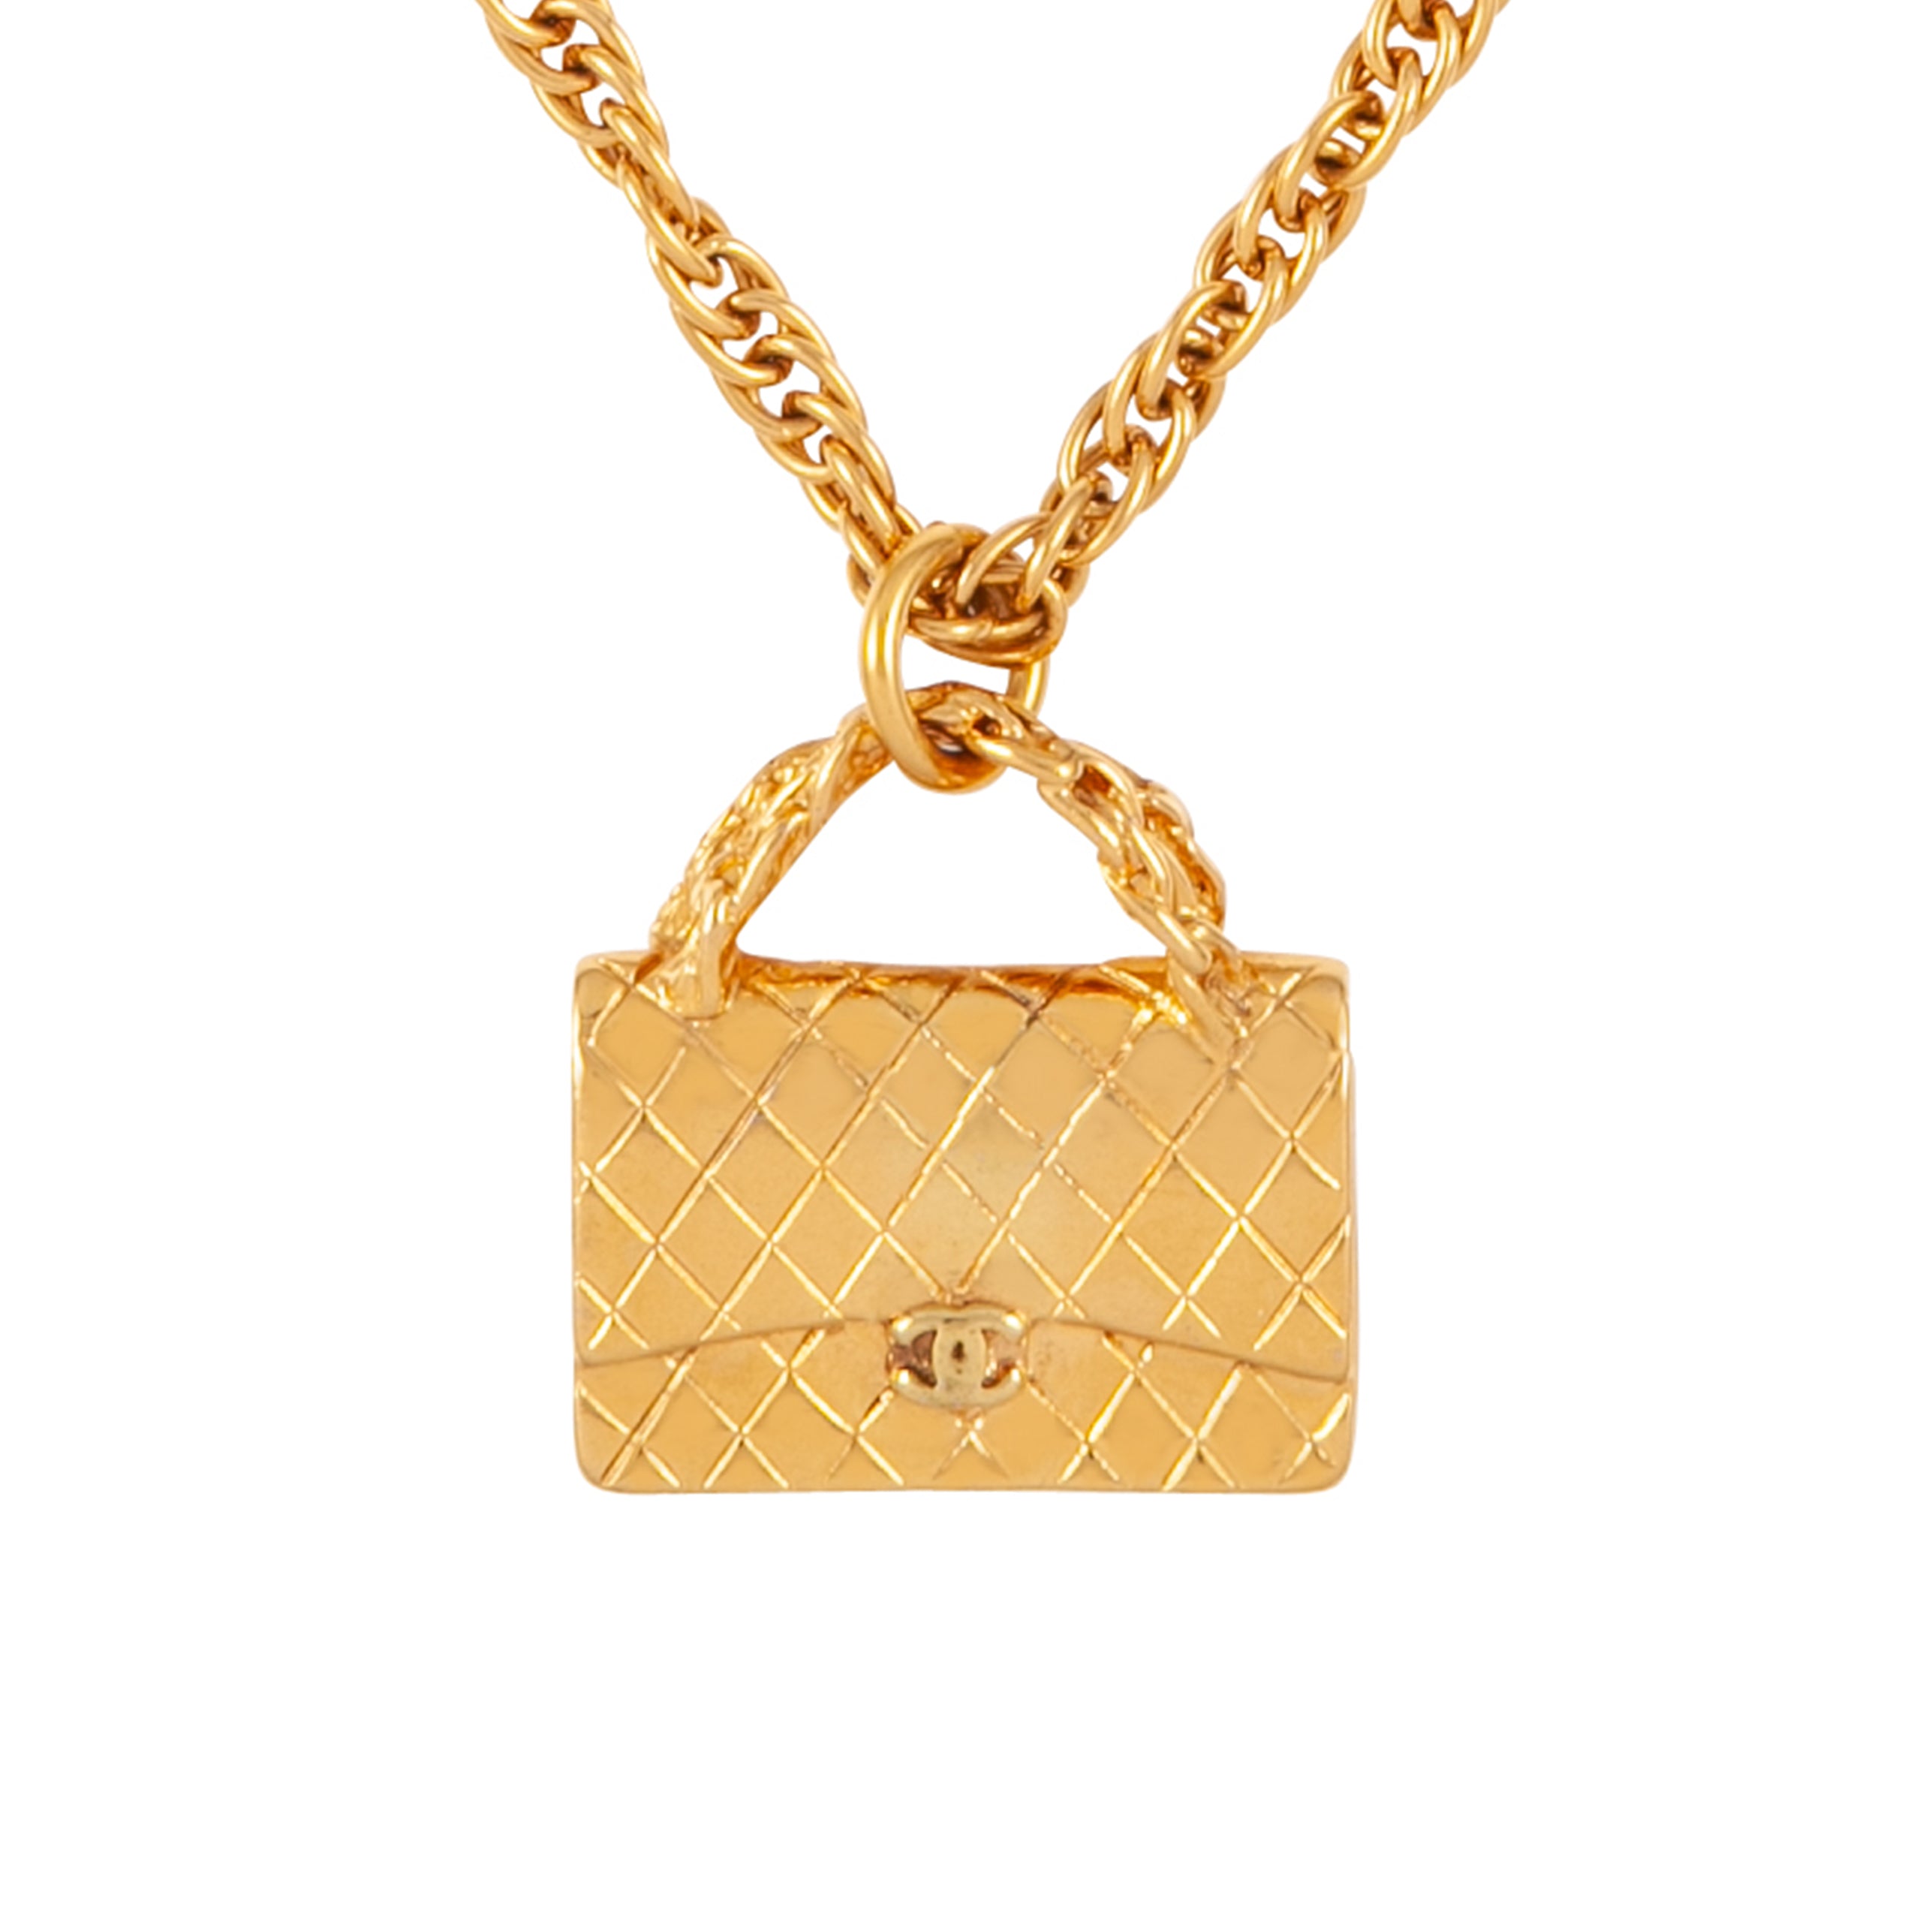 1995 Vintage Chanel Flap Bag Pendant Necklace